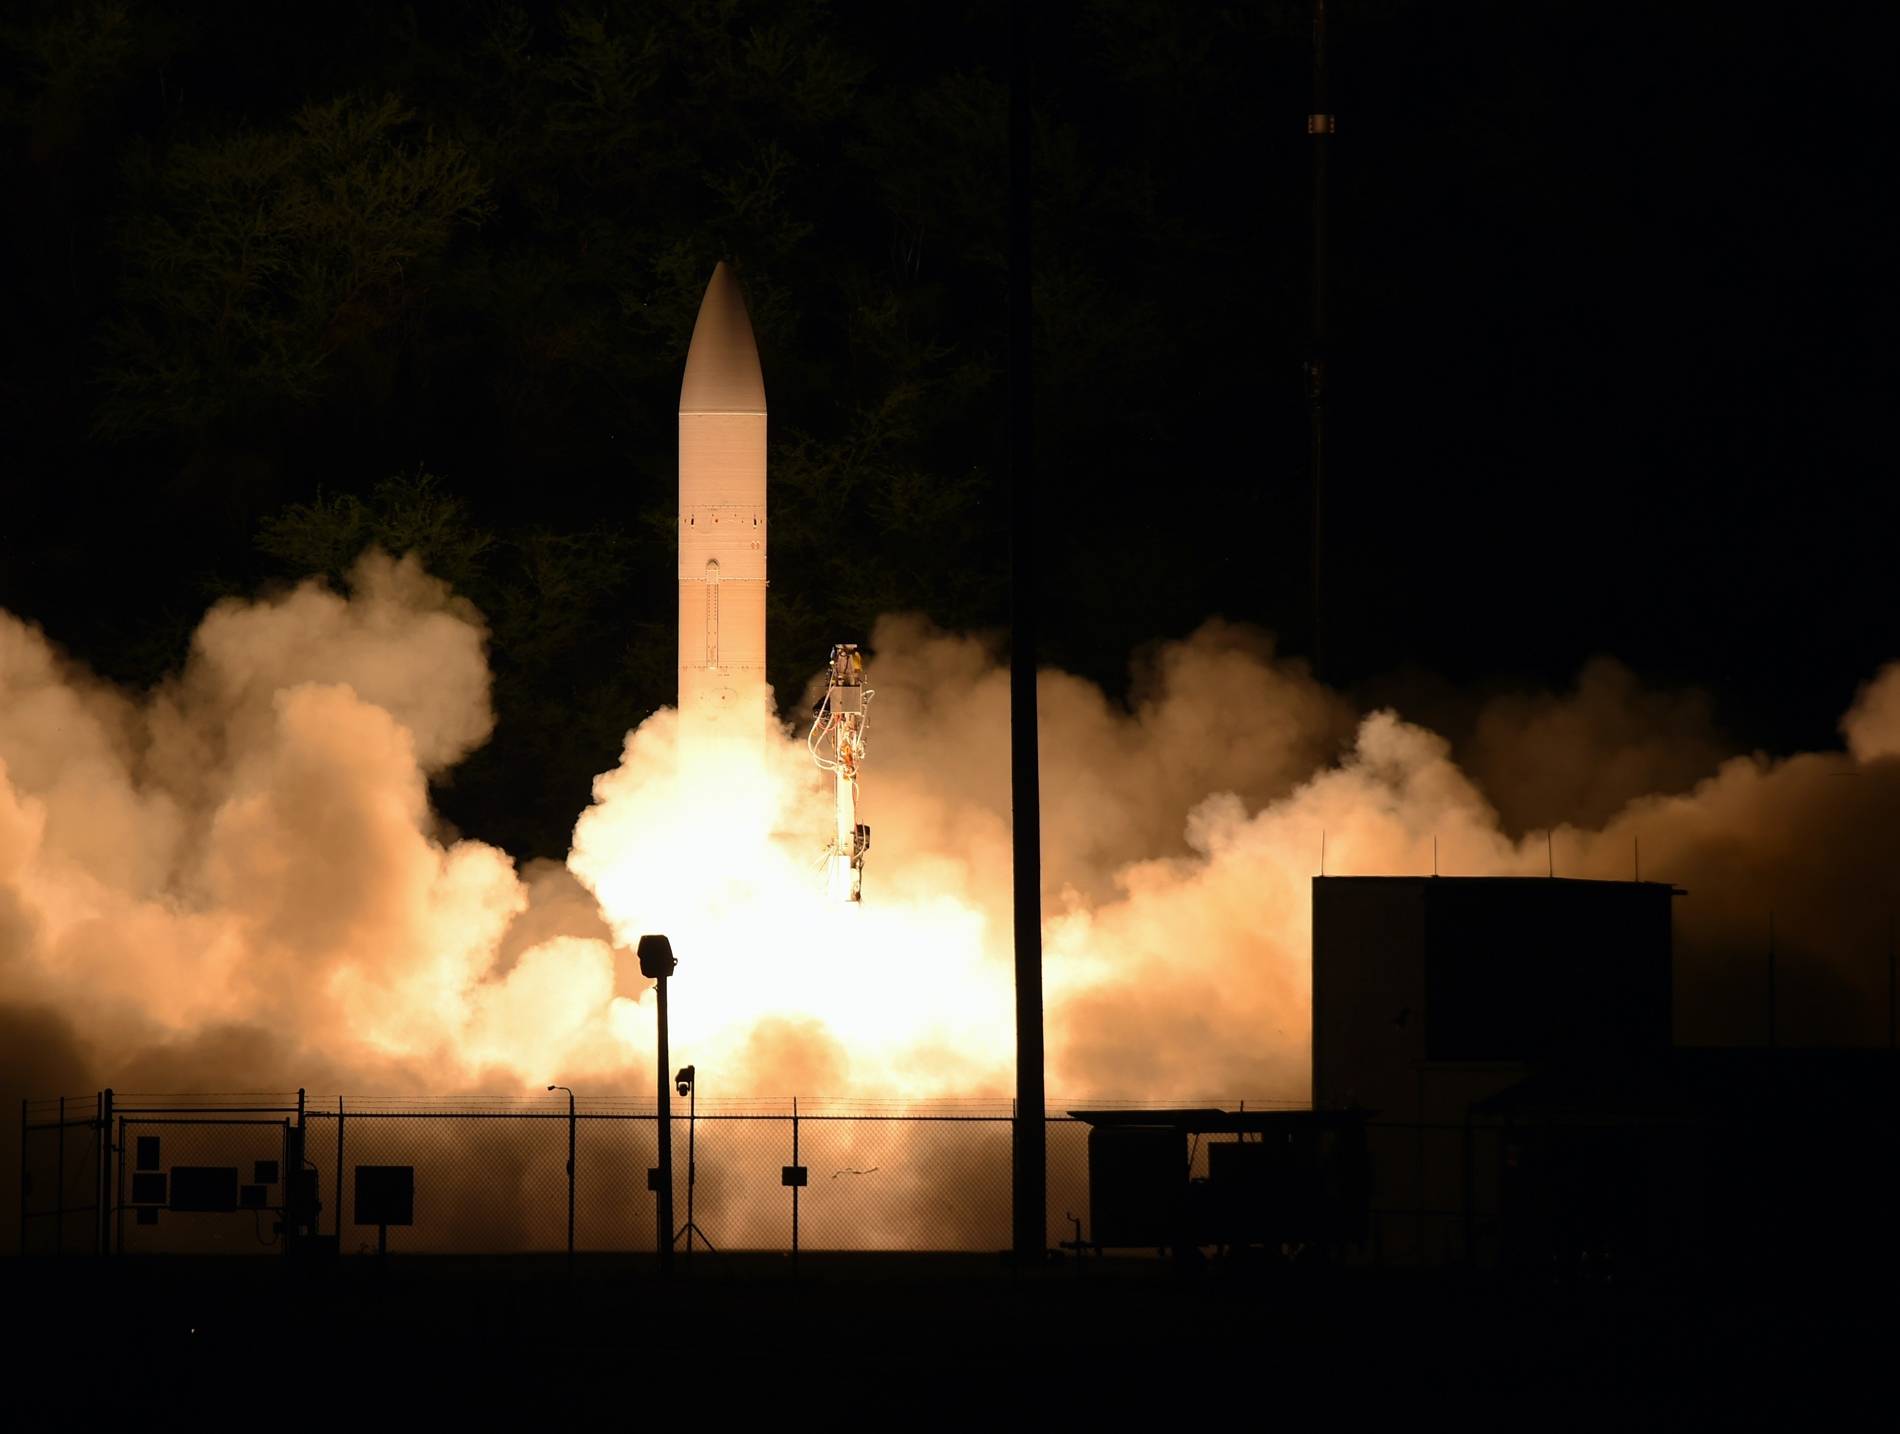 新一代洲际弹道导弹项目上马!6年后陆续列装:投1600亿美元保障